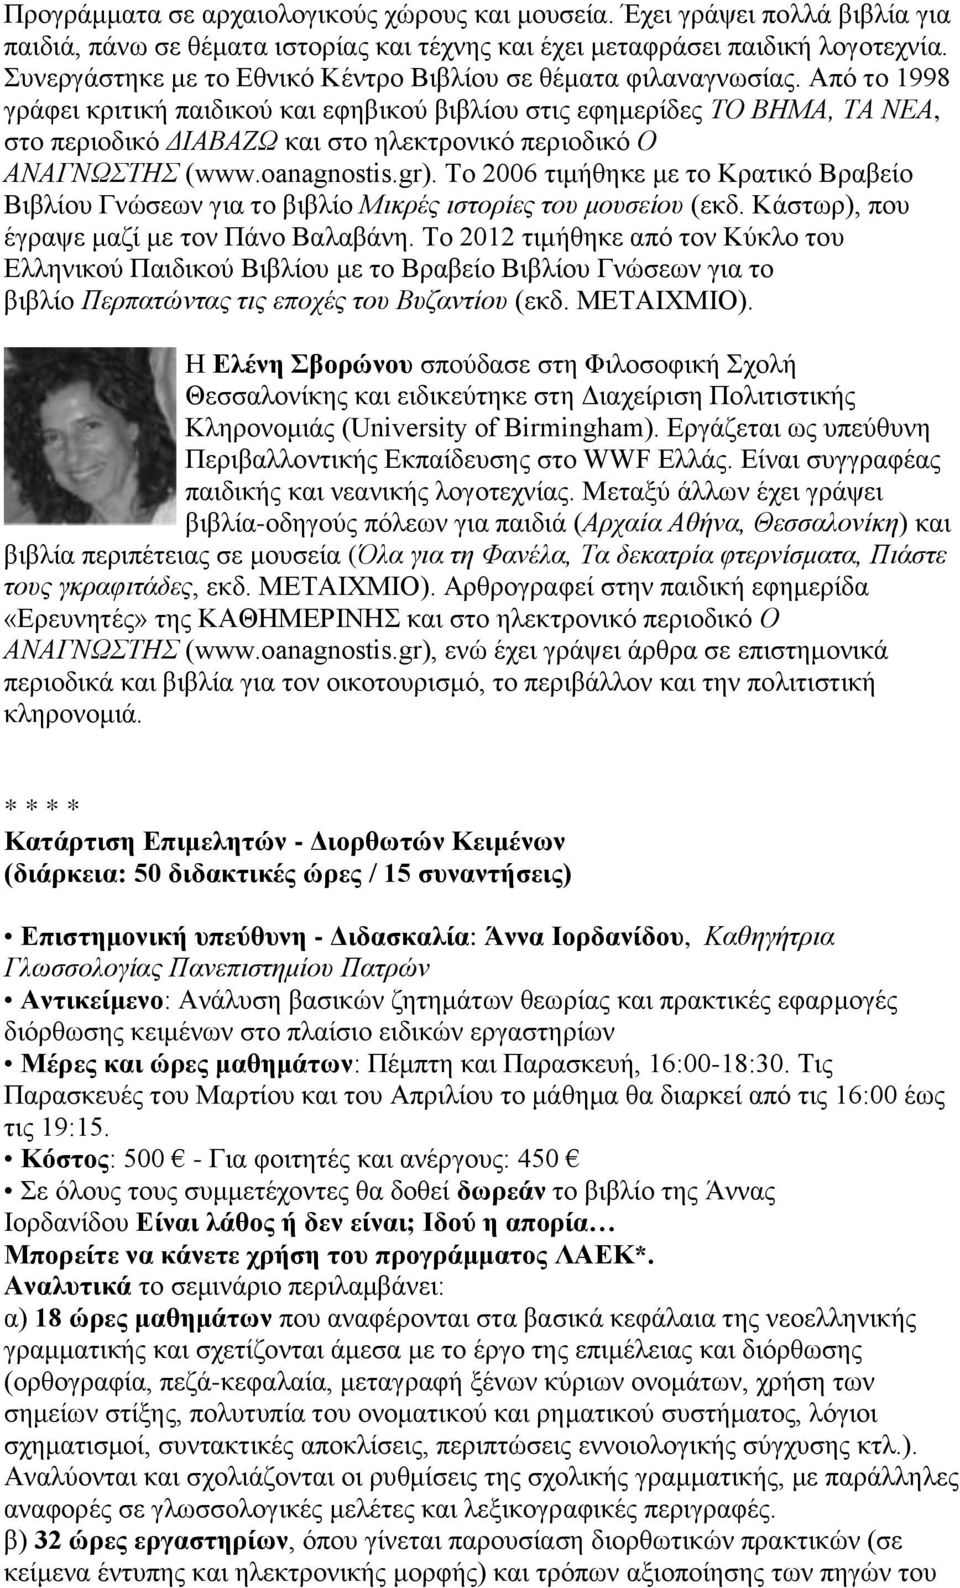 Από το 1998 γράφει κριτική παιδικού και εφηβικού βιβλίου στις εφημερίδες ΤΟ ΒΗΜΑ, ΤΑ ΝΕΑ, στο περιοδικό ΔΙΑΒΑΖΩ και στο ηλεκτρονικό περιοδικό Ο ΑΝΑΓΝΩΣΤΗΣ (www.oanagnostis.gr).